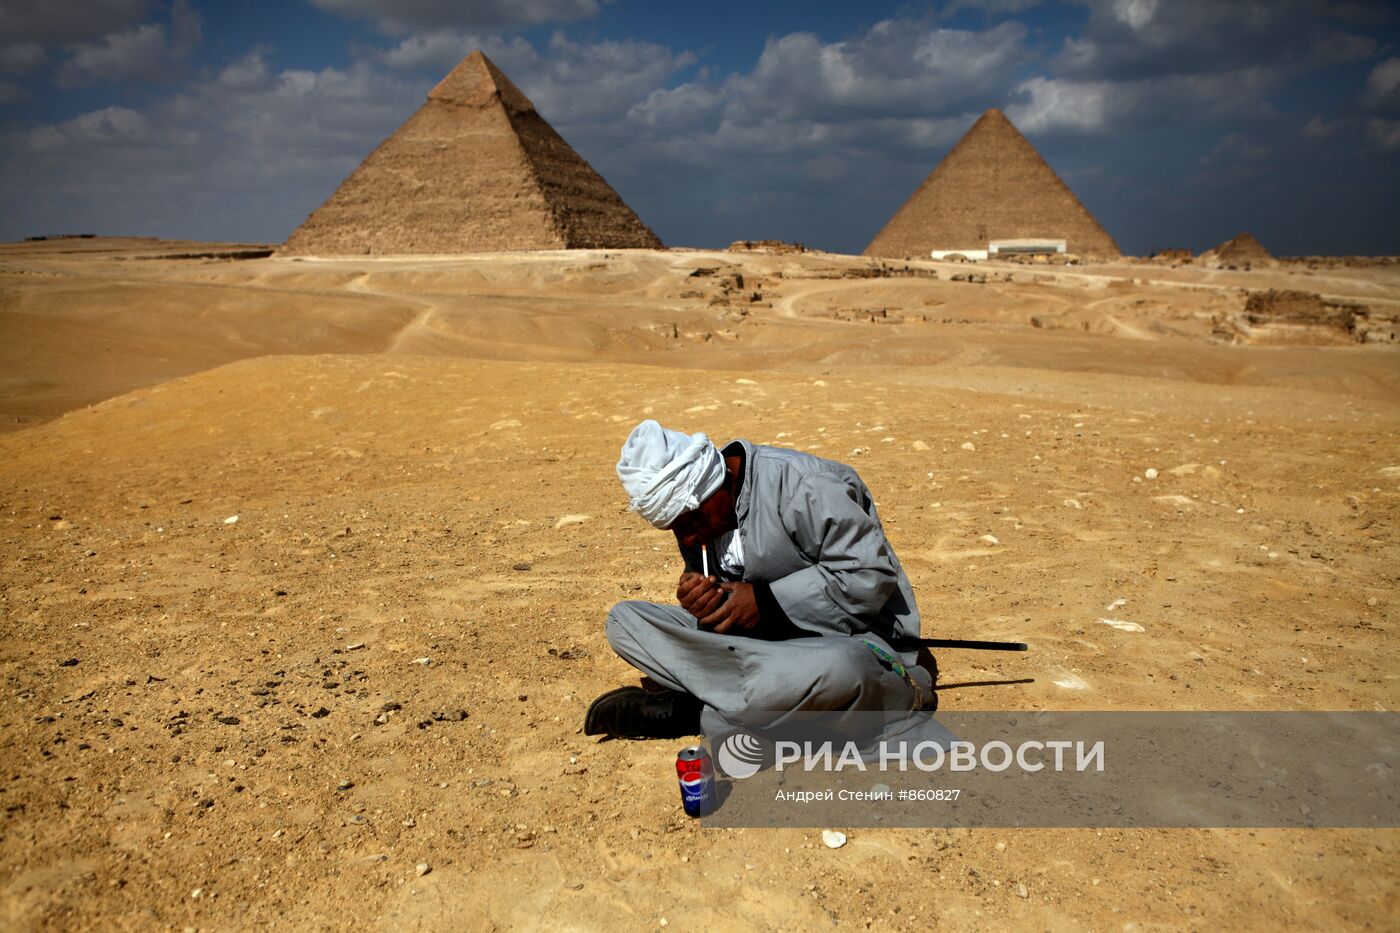 Пирамиды Гизы